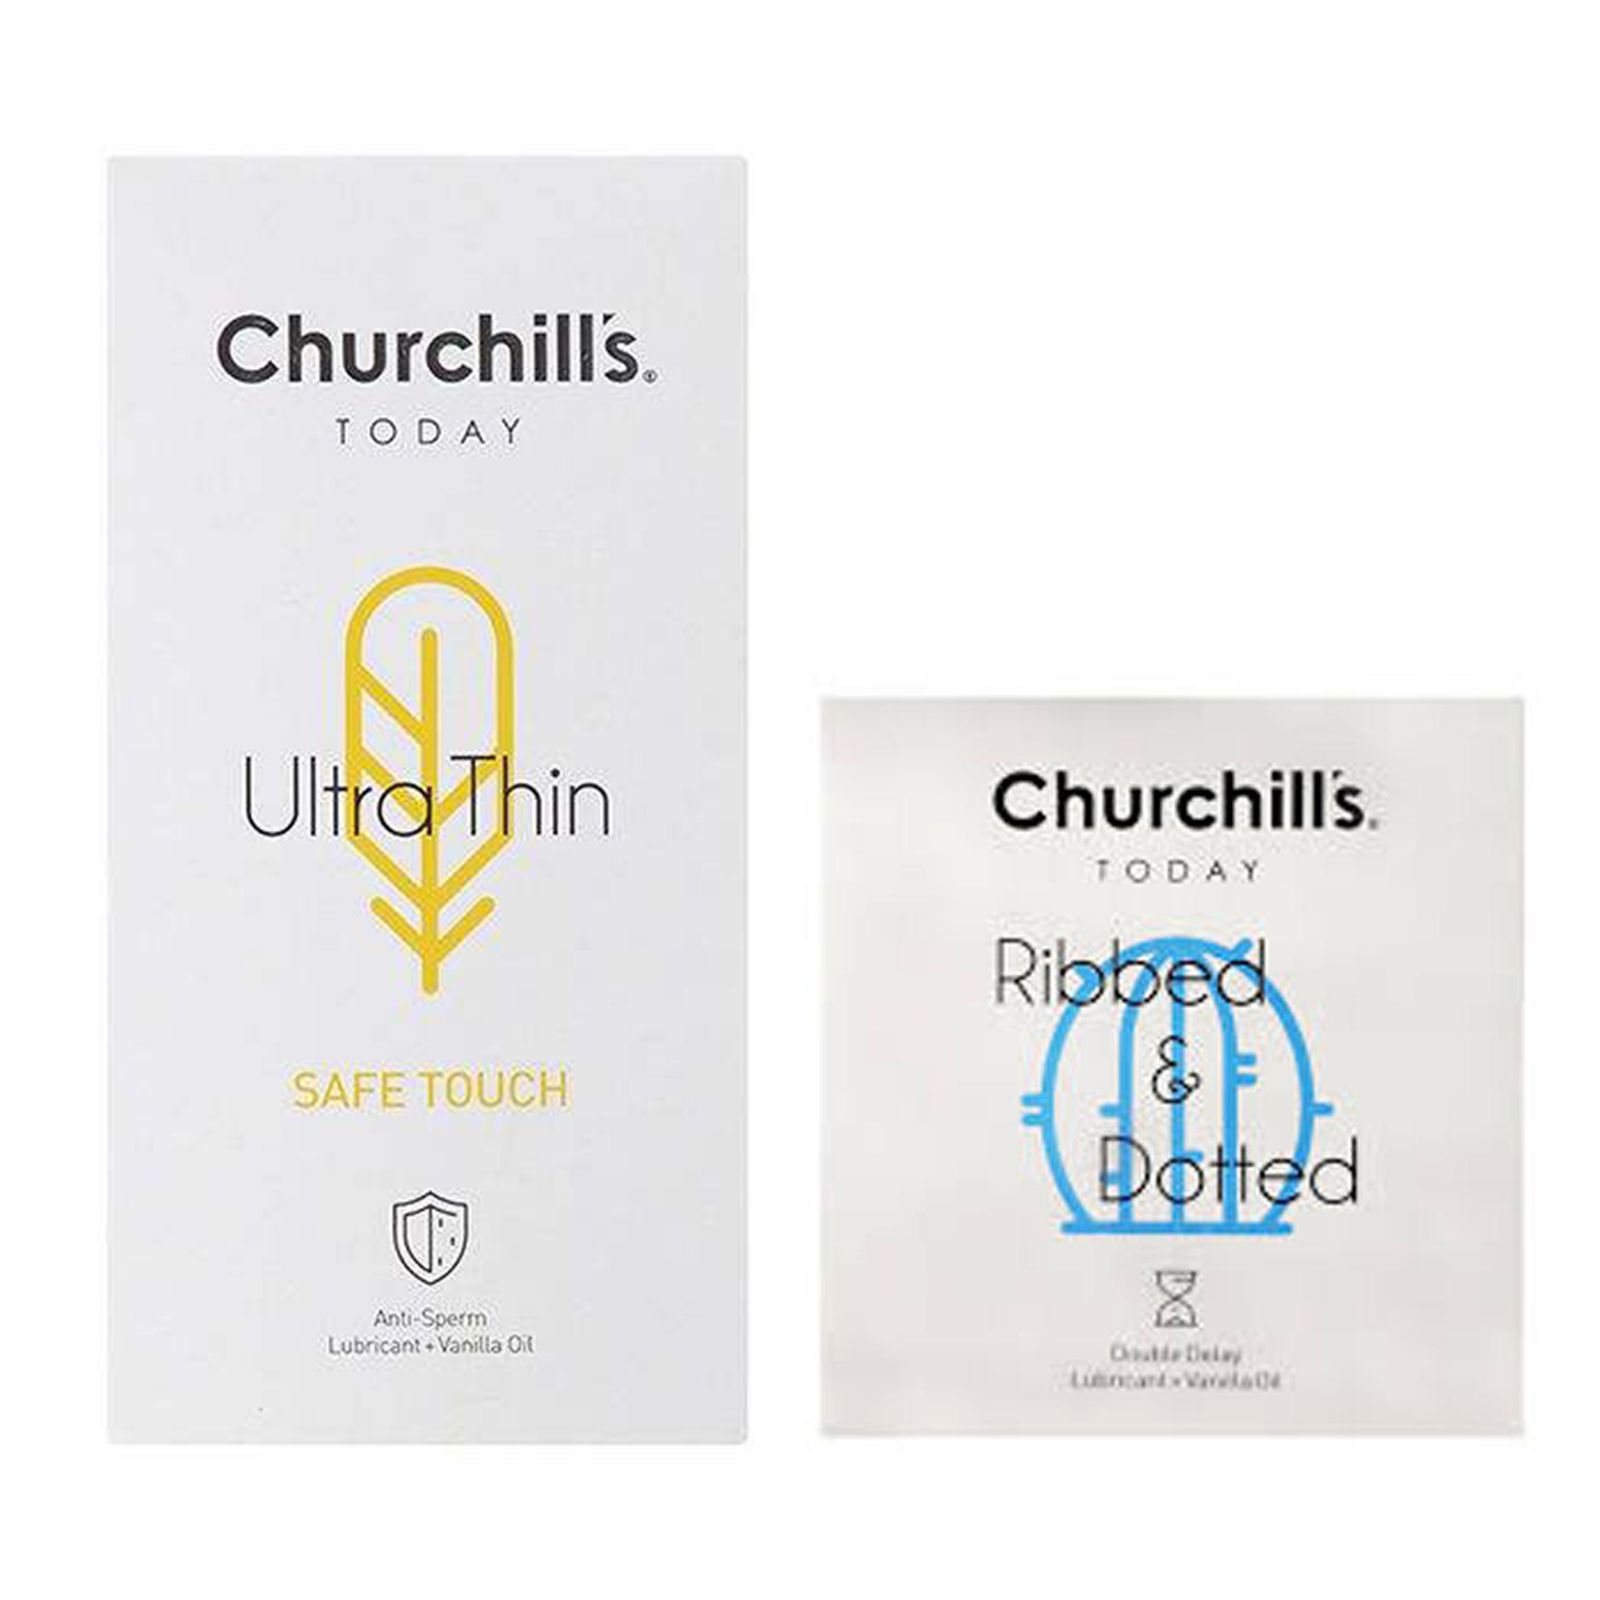 کاندوم چرچیلز مدل Safe Touch بسته 12 عددی به همراه کاندوم چرچیلز مدل شیاردار و خاردار بسته 3 عددی -  - 2